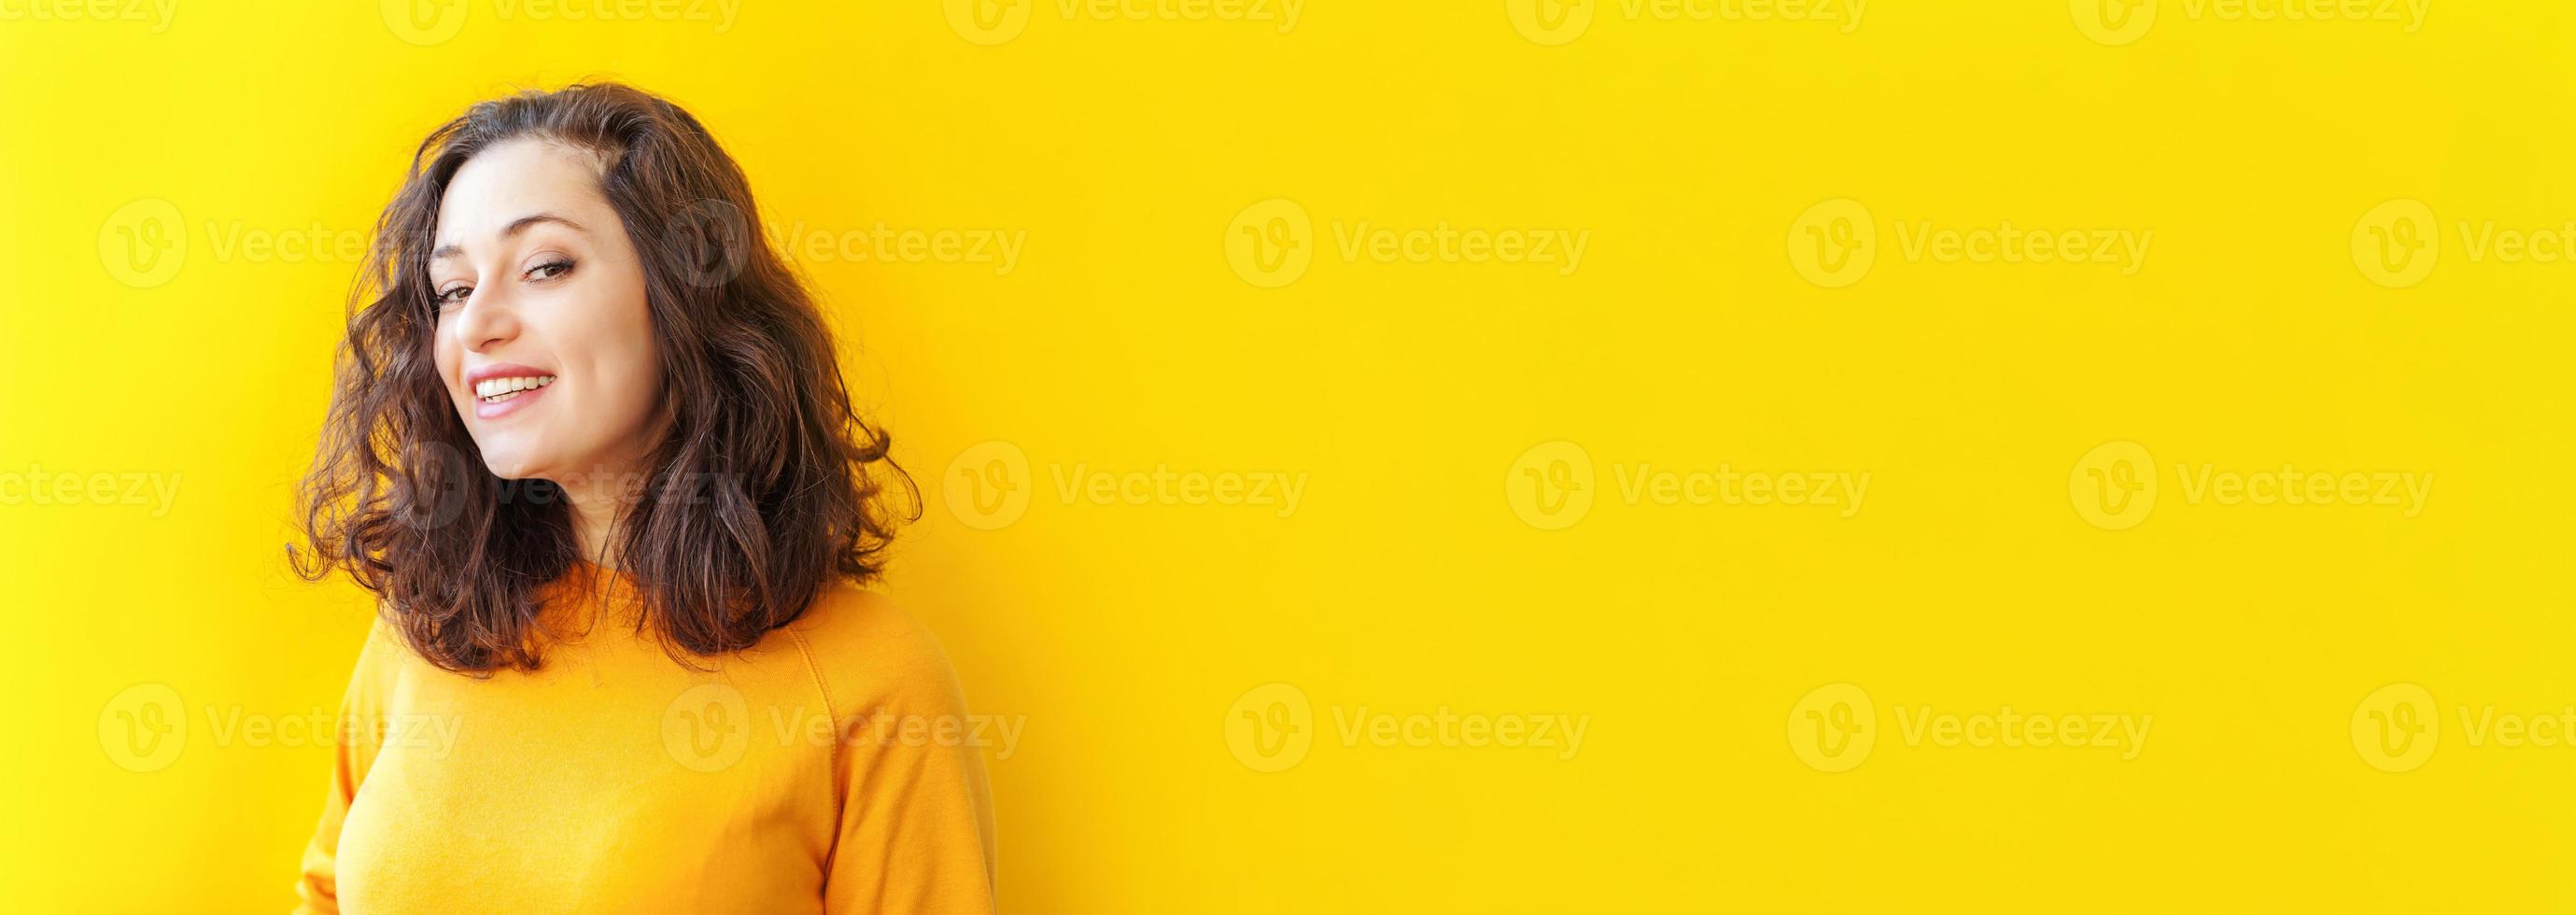 fille heureuse souriante. portrait de beauté jeune femme brune riante positive heureuse sur fond jaune isolé. femme européenne. émotion humaine positive expression faciale bannière de langage corporel photo